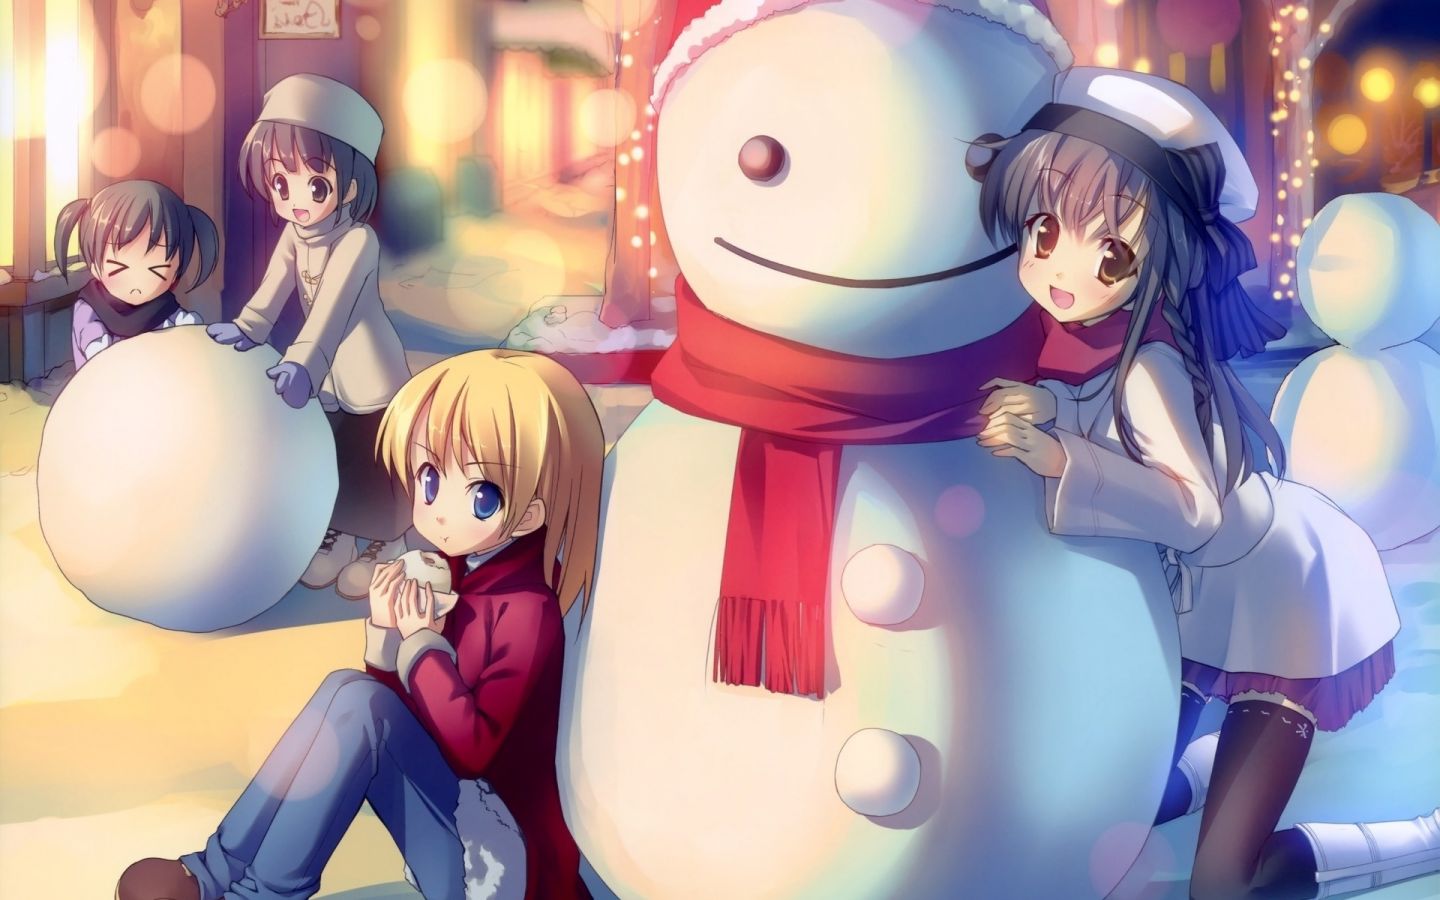 Hãy chiêm ngưỡng một mùa Giáng Sinh tuyệt đẹp trong thế giới anime qua hình nền Giáng Sinh anime đầy đủ sắc màu và hoạt hình. Từ các nhân vật phong cách anime đáng yêu đến phong cảnh tuyết rơi thần tiên, hình nền Giáng Sinh anime sẽ làm bạn phấn khích cho mùa lễ hội này!